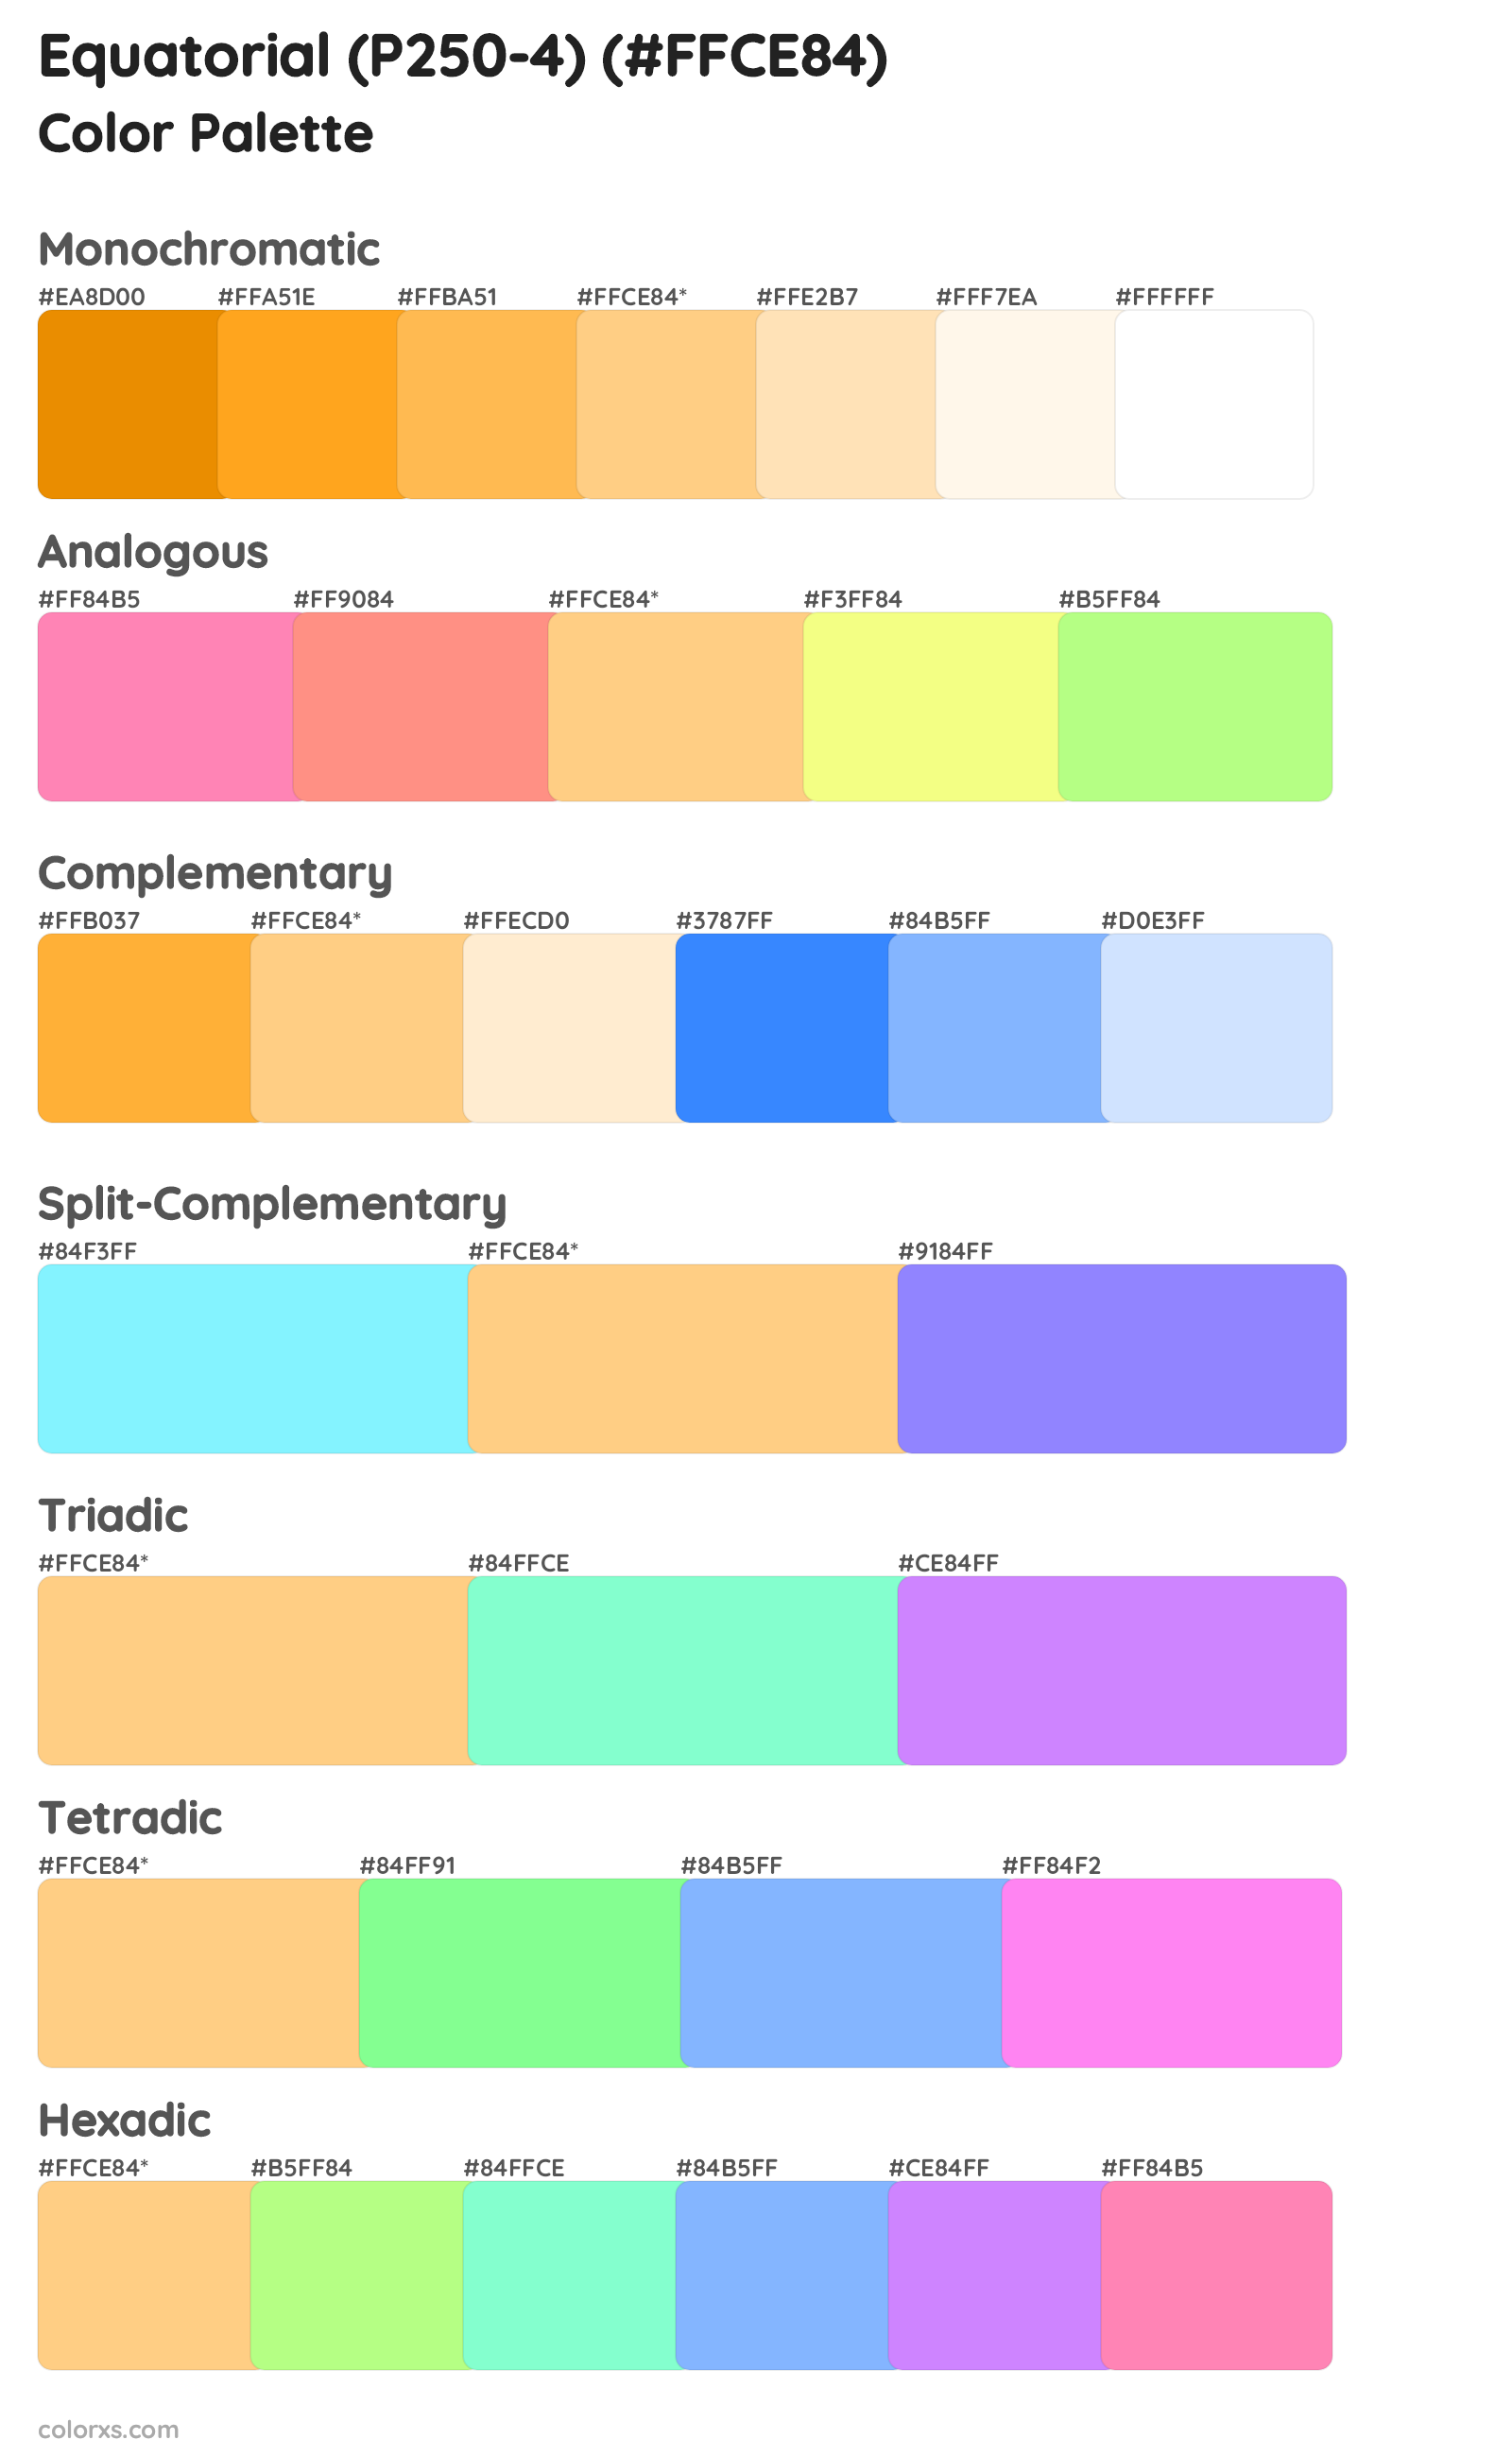 Equatorial (P250-4) Color Scheme Palettes